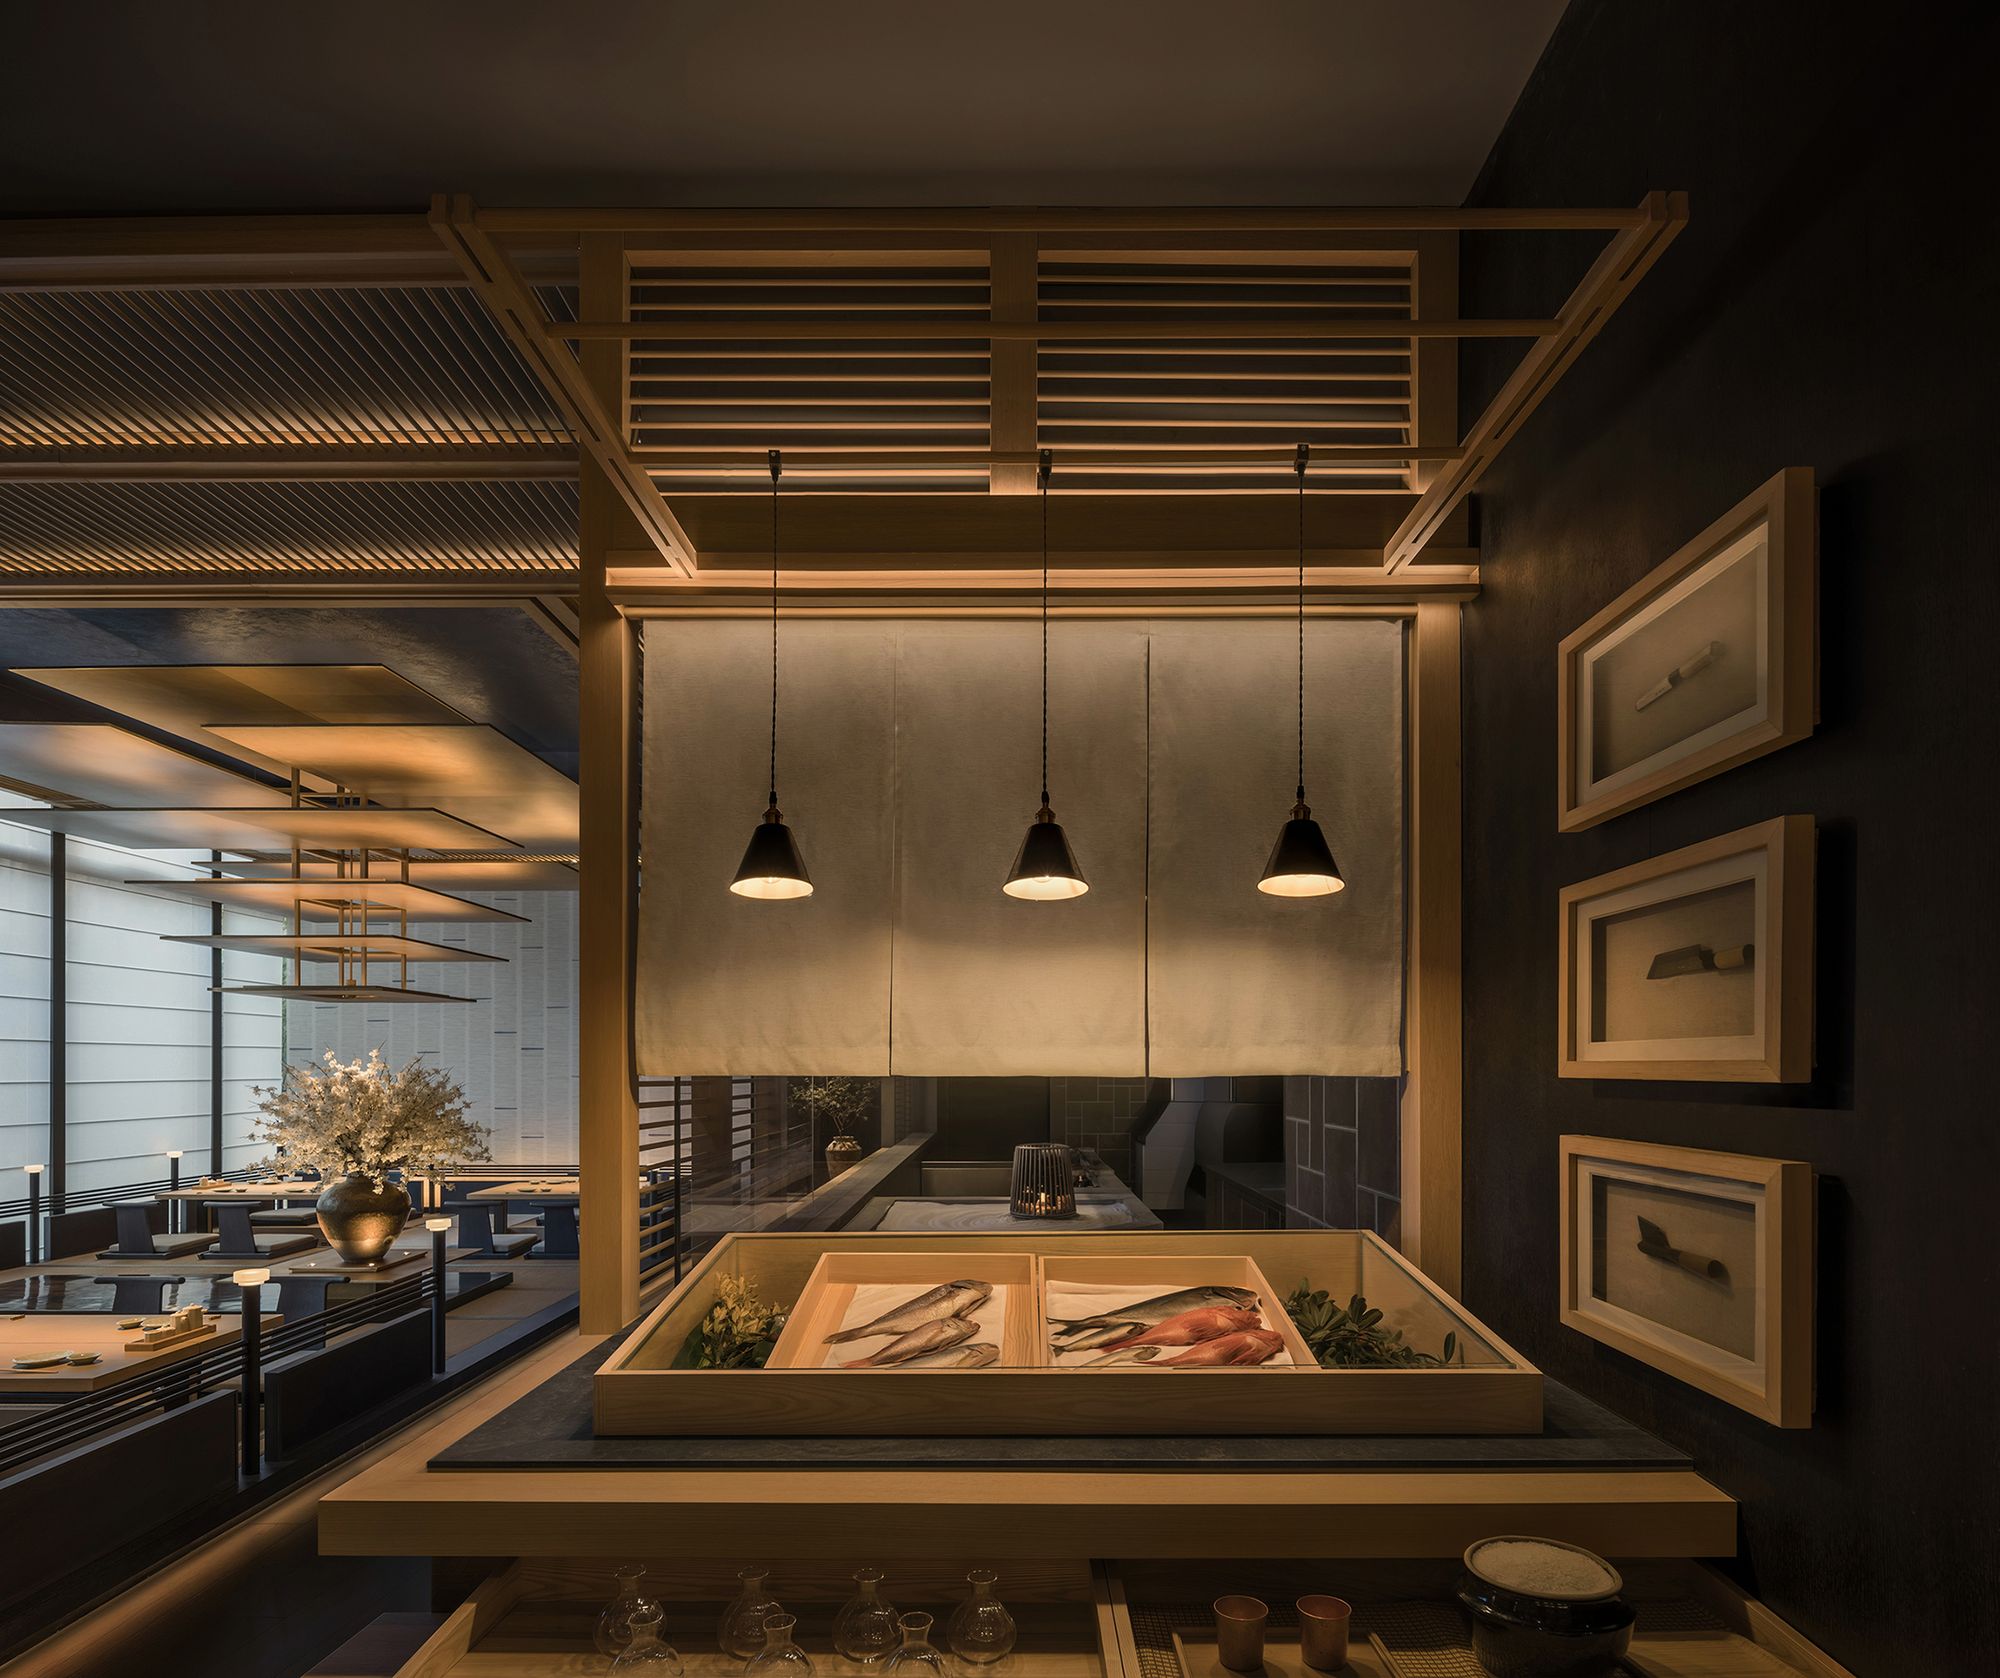 图片[4]|Aumann日本料理餐厅|ART-Arrakis | 建筑室内设计的创新与灵感